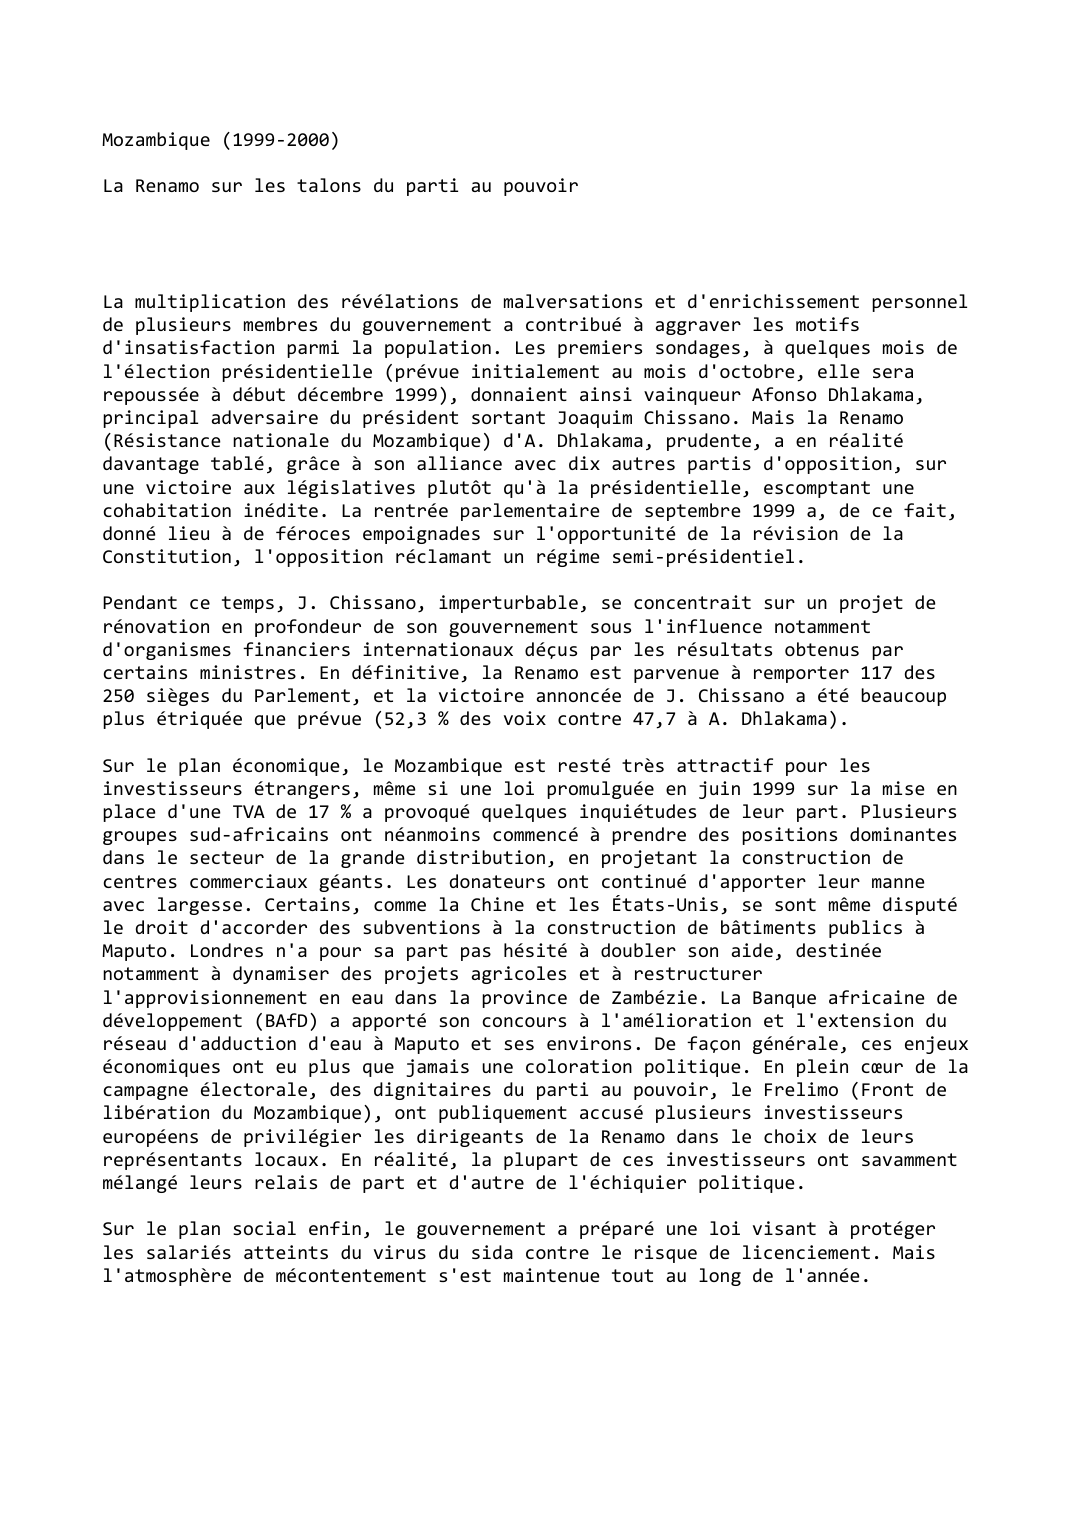 Prévisualisation du document Mozambique (1999-2000)

La Renamo sur les talons du parti au pouvoir